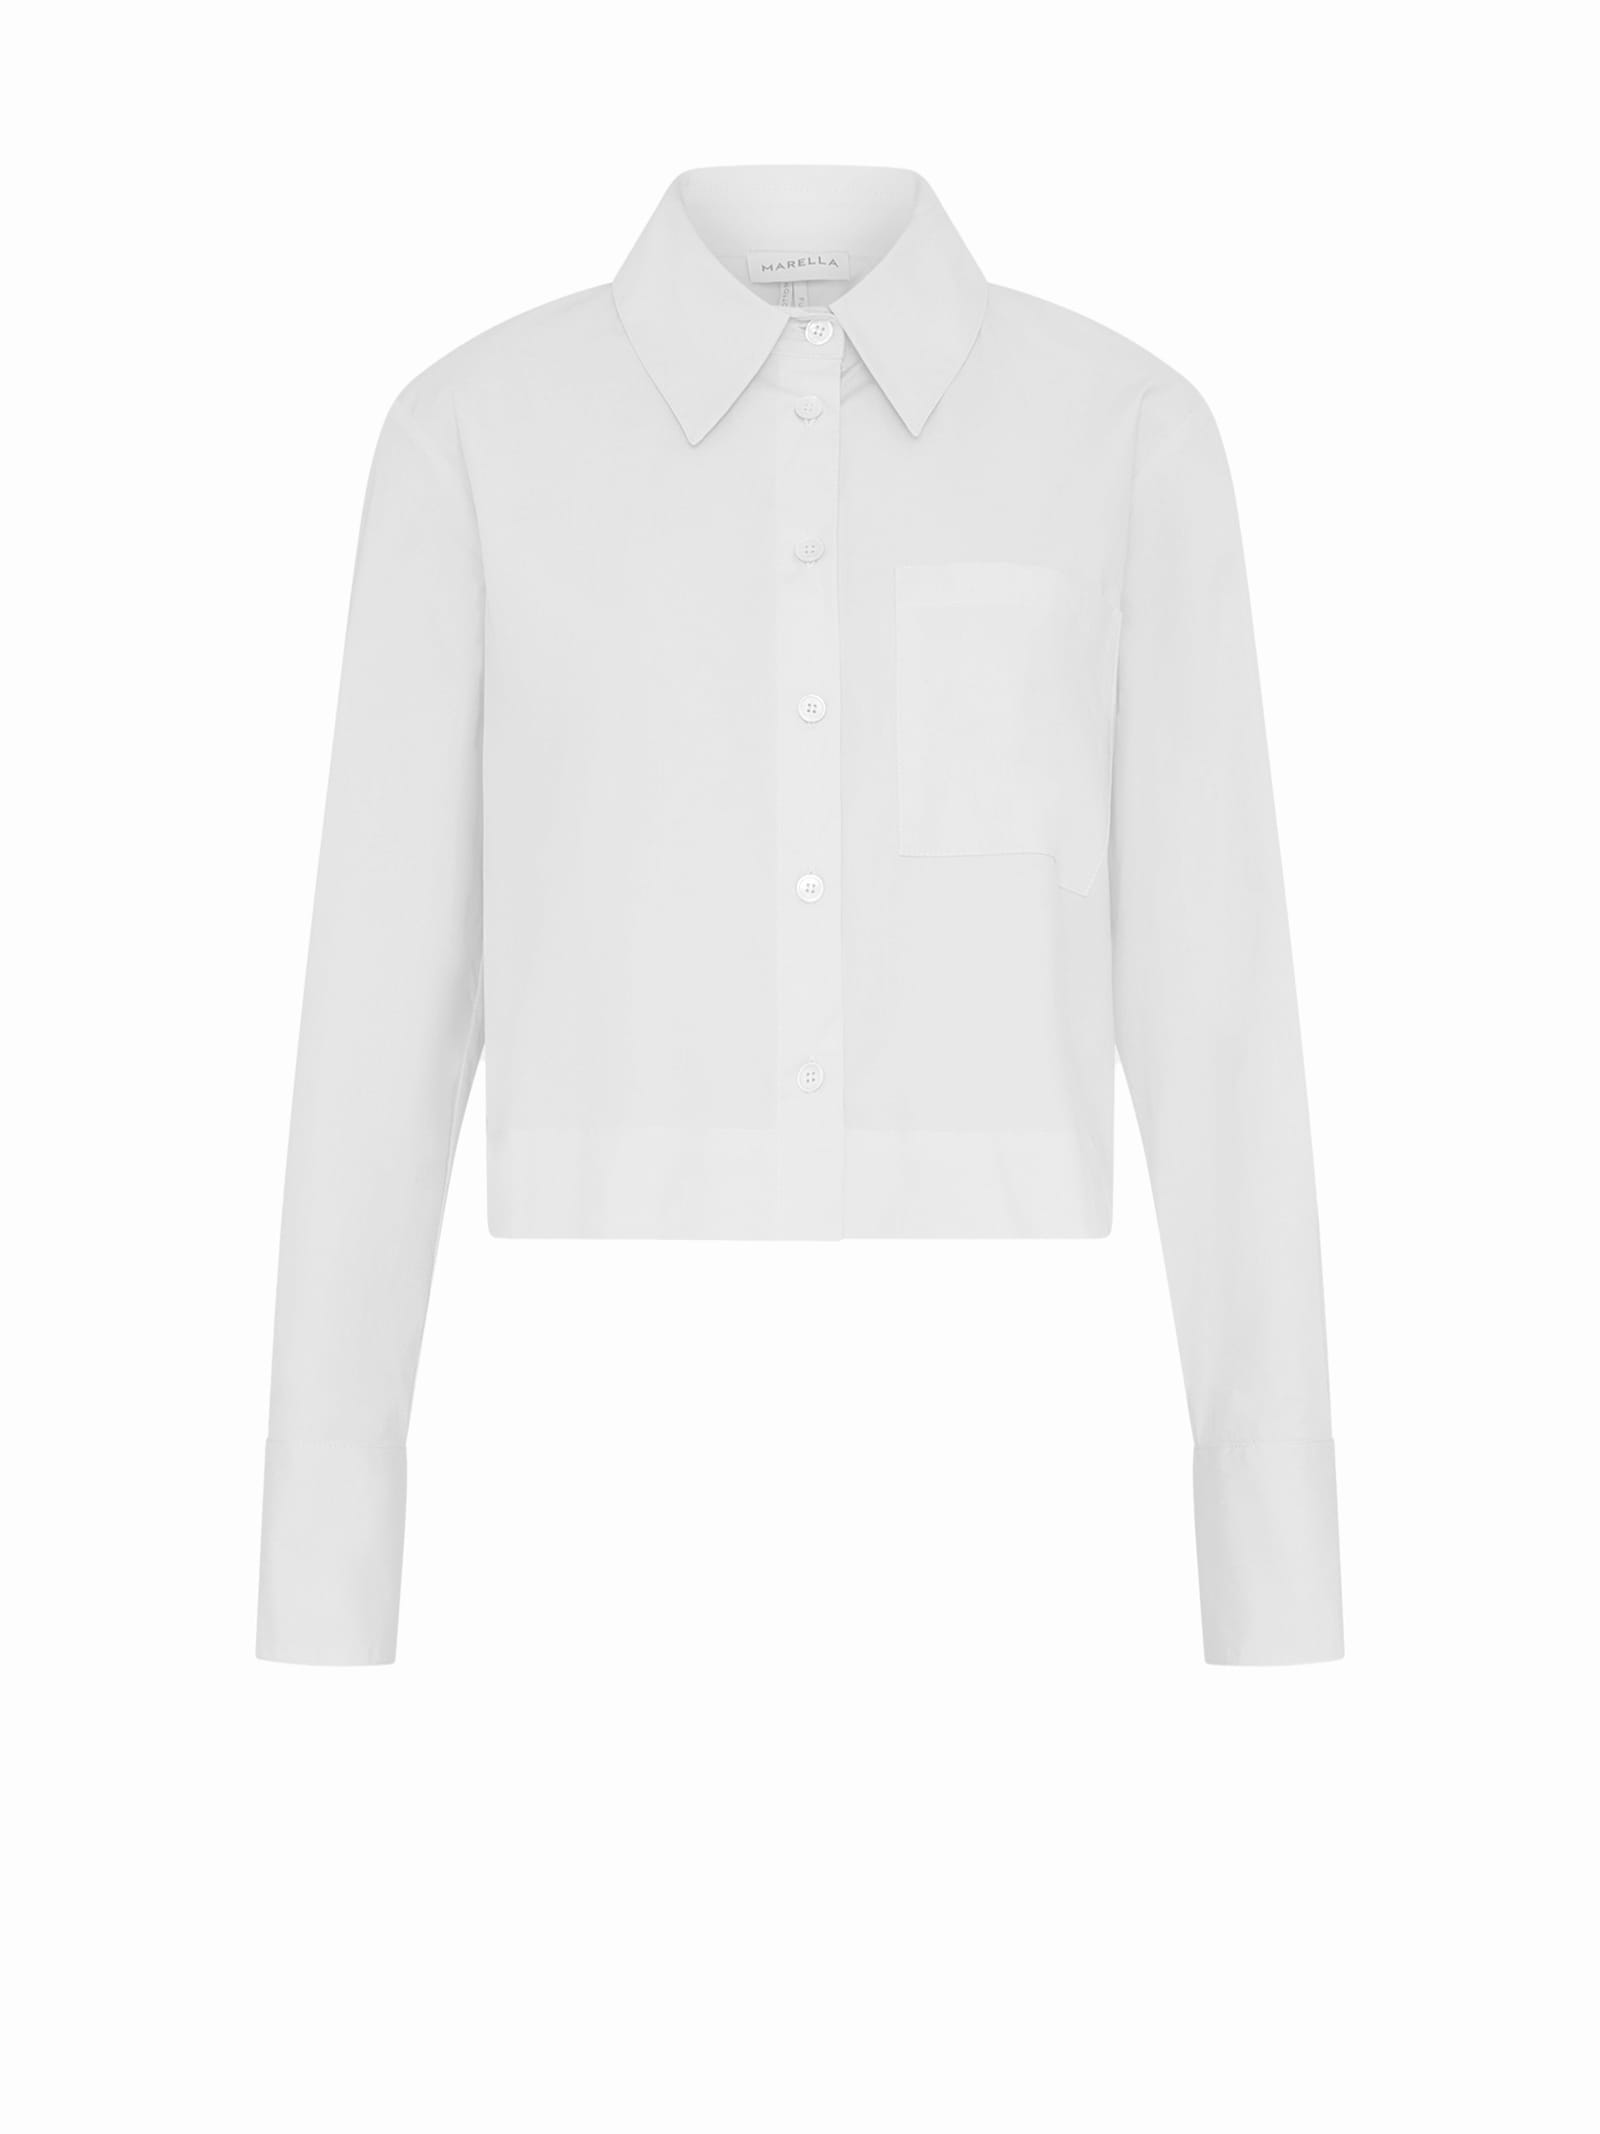 White Long-sleeved Shirt